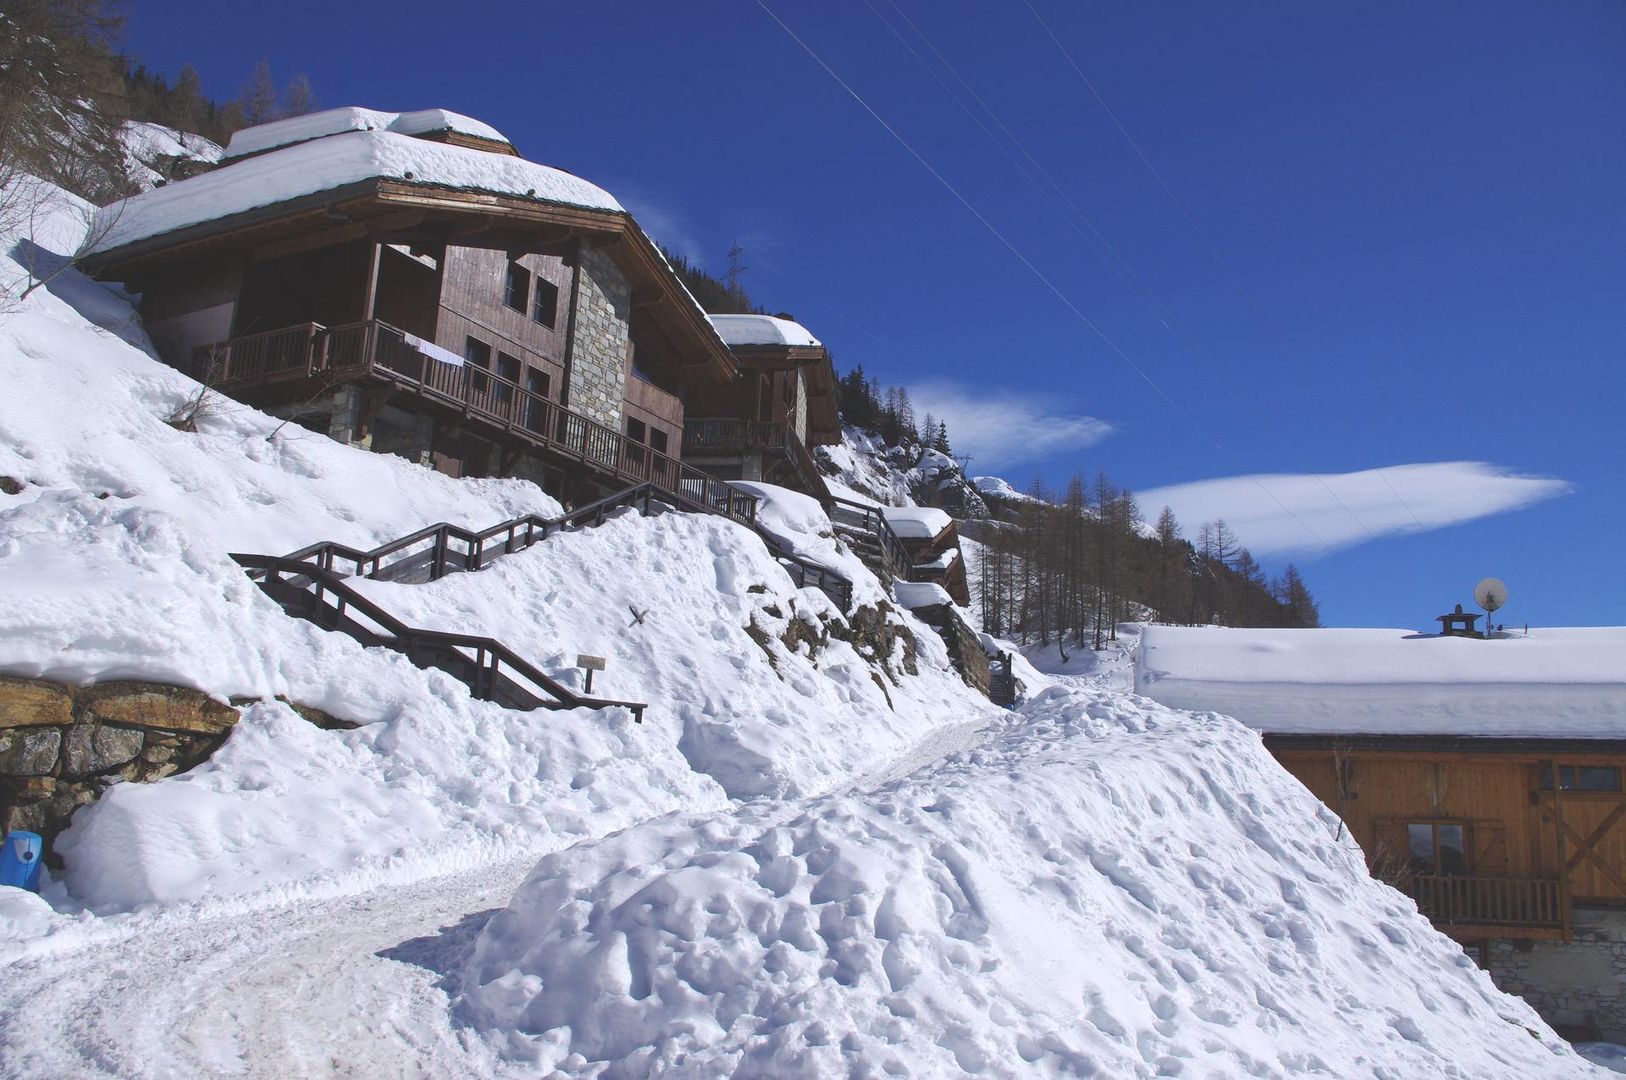 Meer info over Chalet Aspen  bij Wintertrex